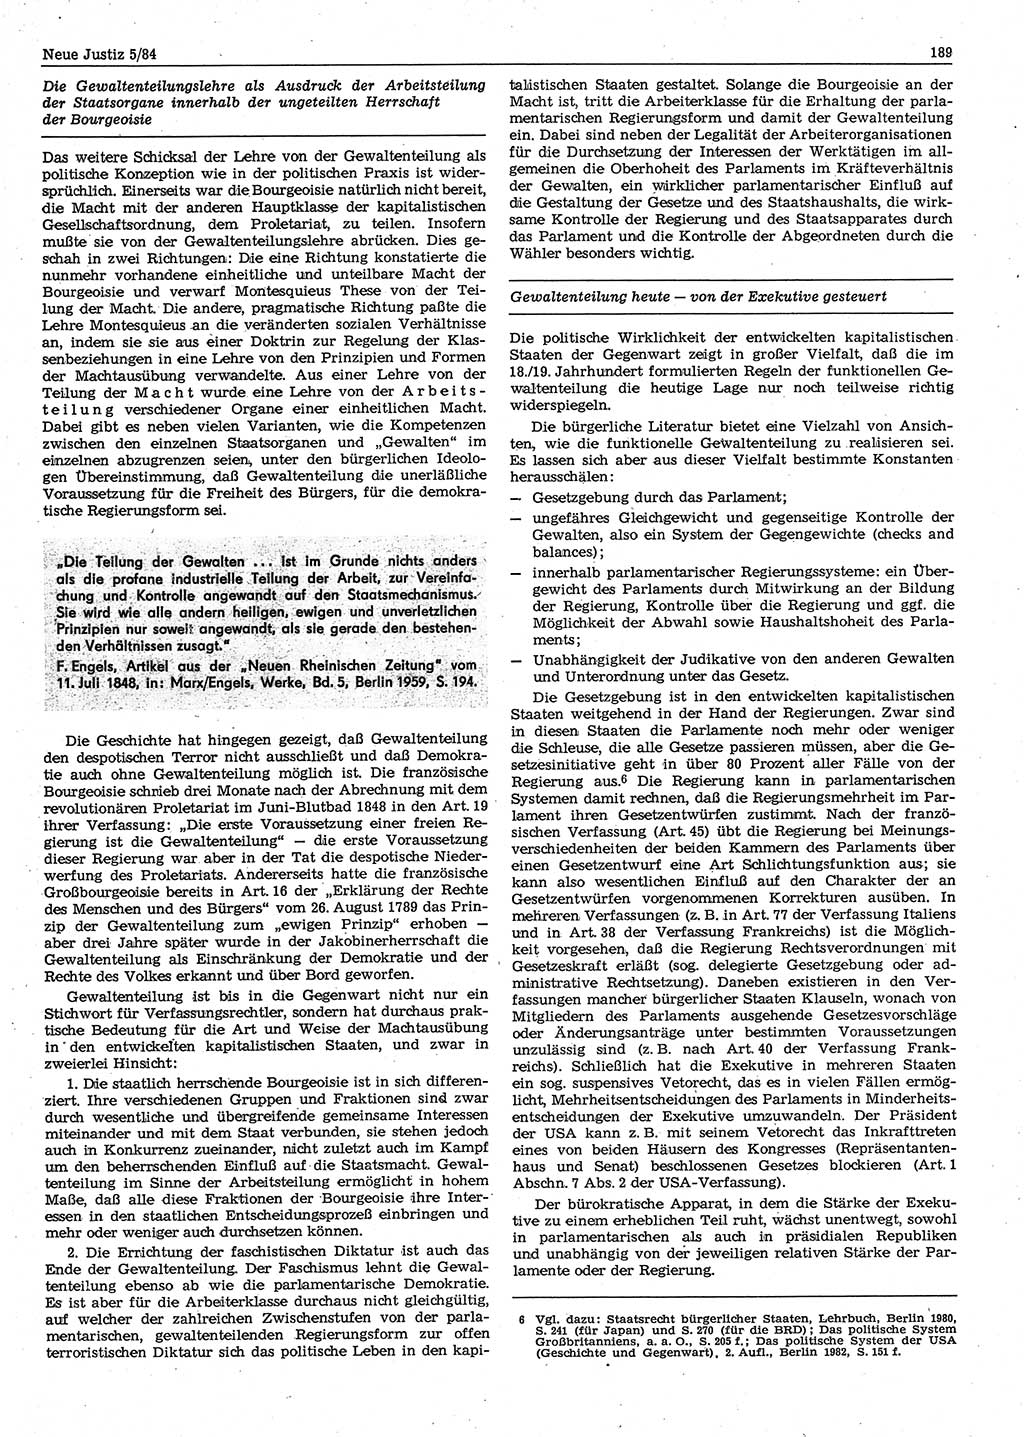 Neue Justiz (NJ), Zeitschrift für sozialistisches Recht und Gesetzlichkeit [Deutsche Demokratische Republik (DDR)], 38. Jahrgang 1984, Seite 189 (NJ DDR 1984, S. 189)